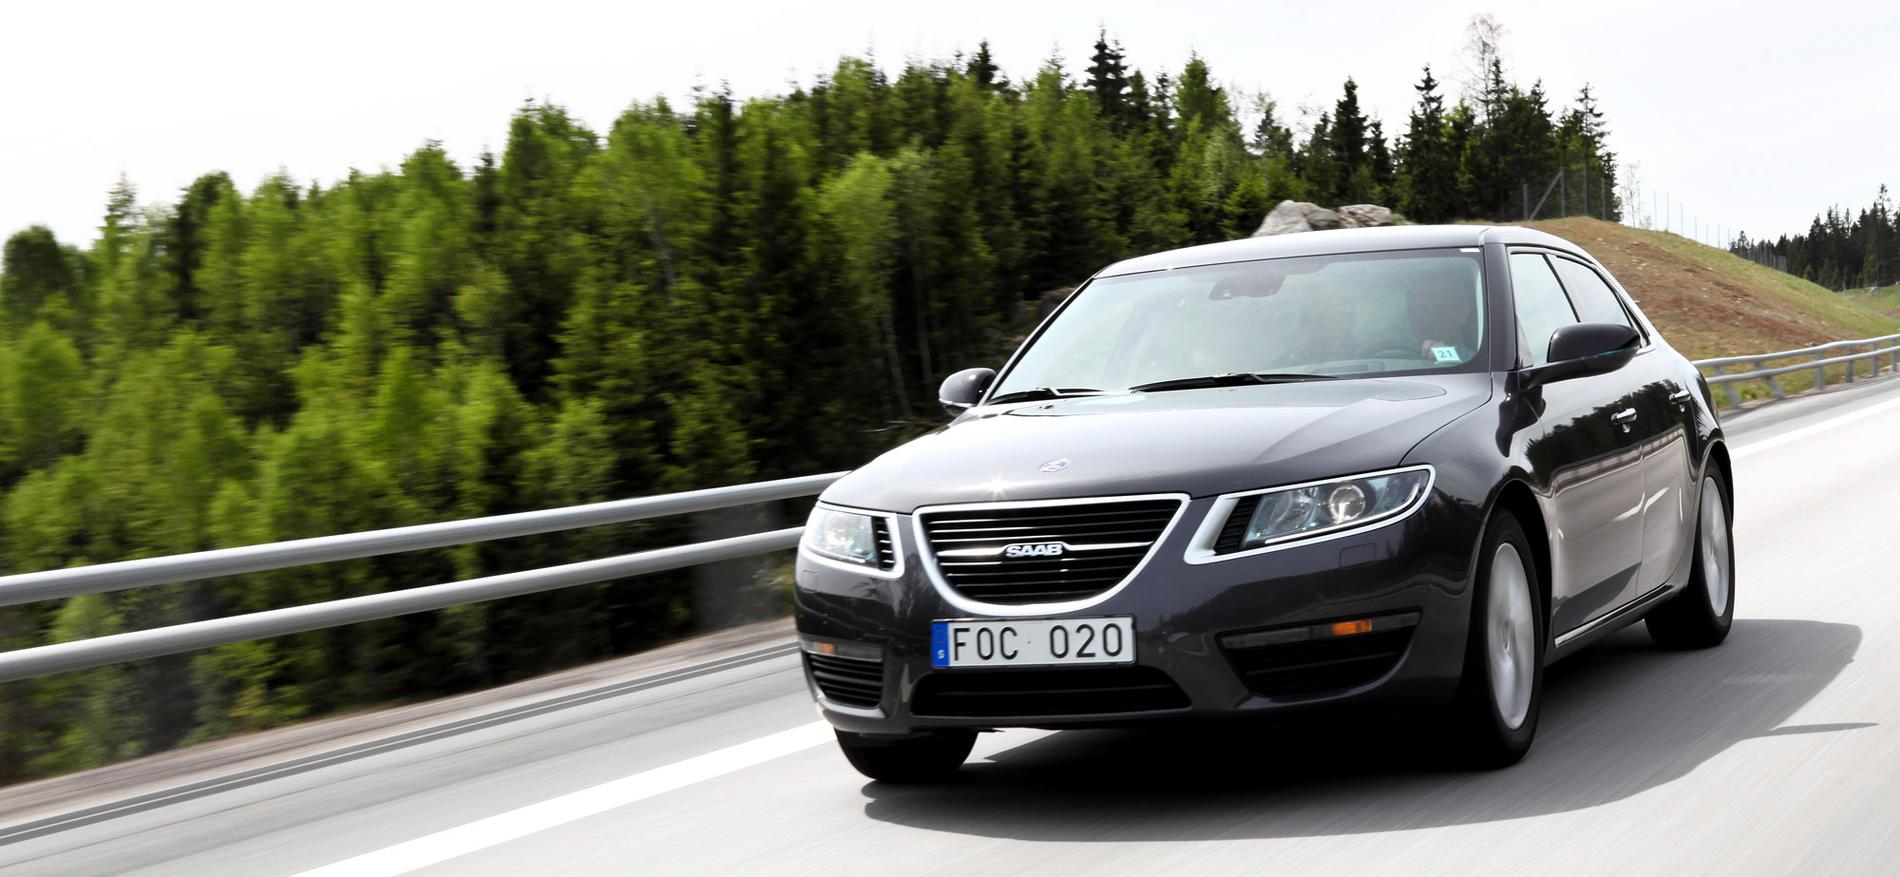 Första riktiga testet – Martin Ström kör nya Saab 9-5. Kan Trollhättan andas ut nu? Nja, inte riktigt än.